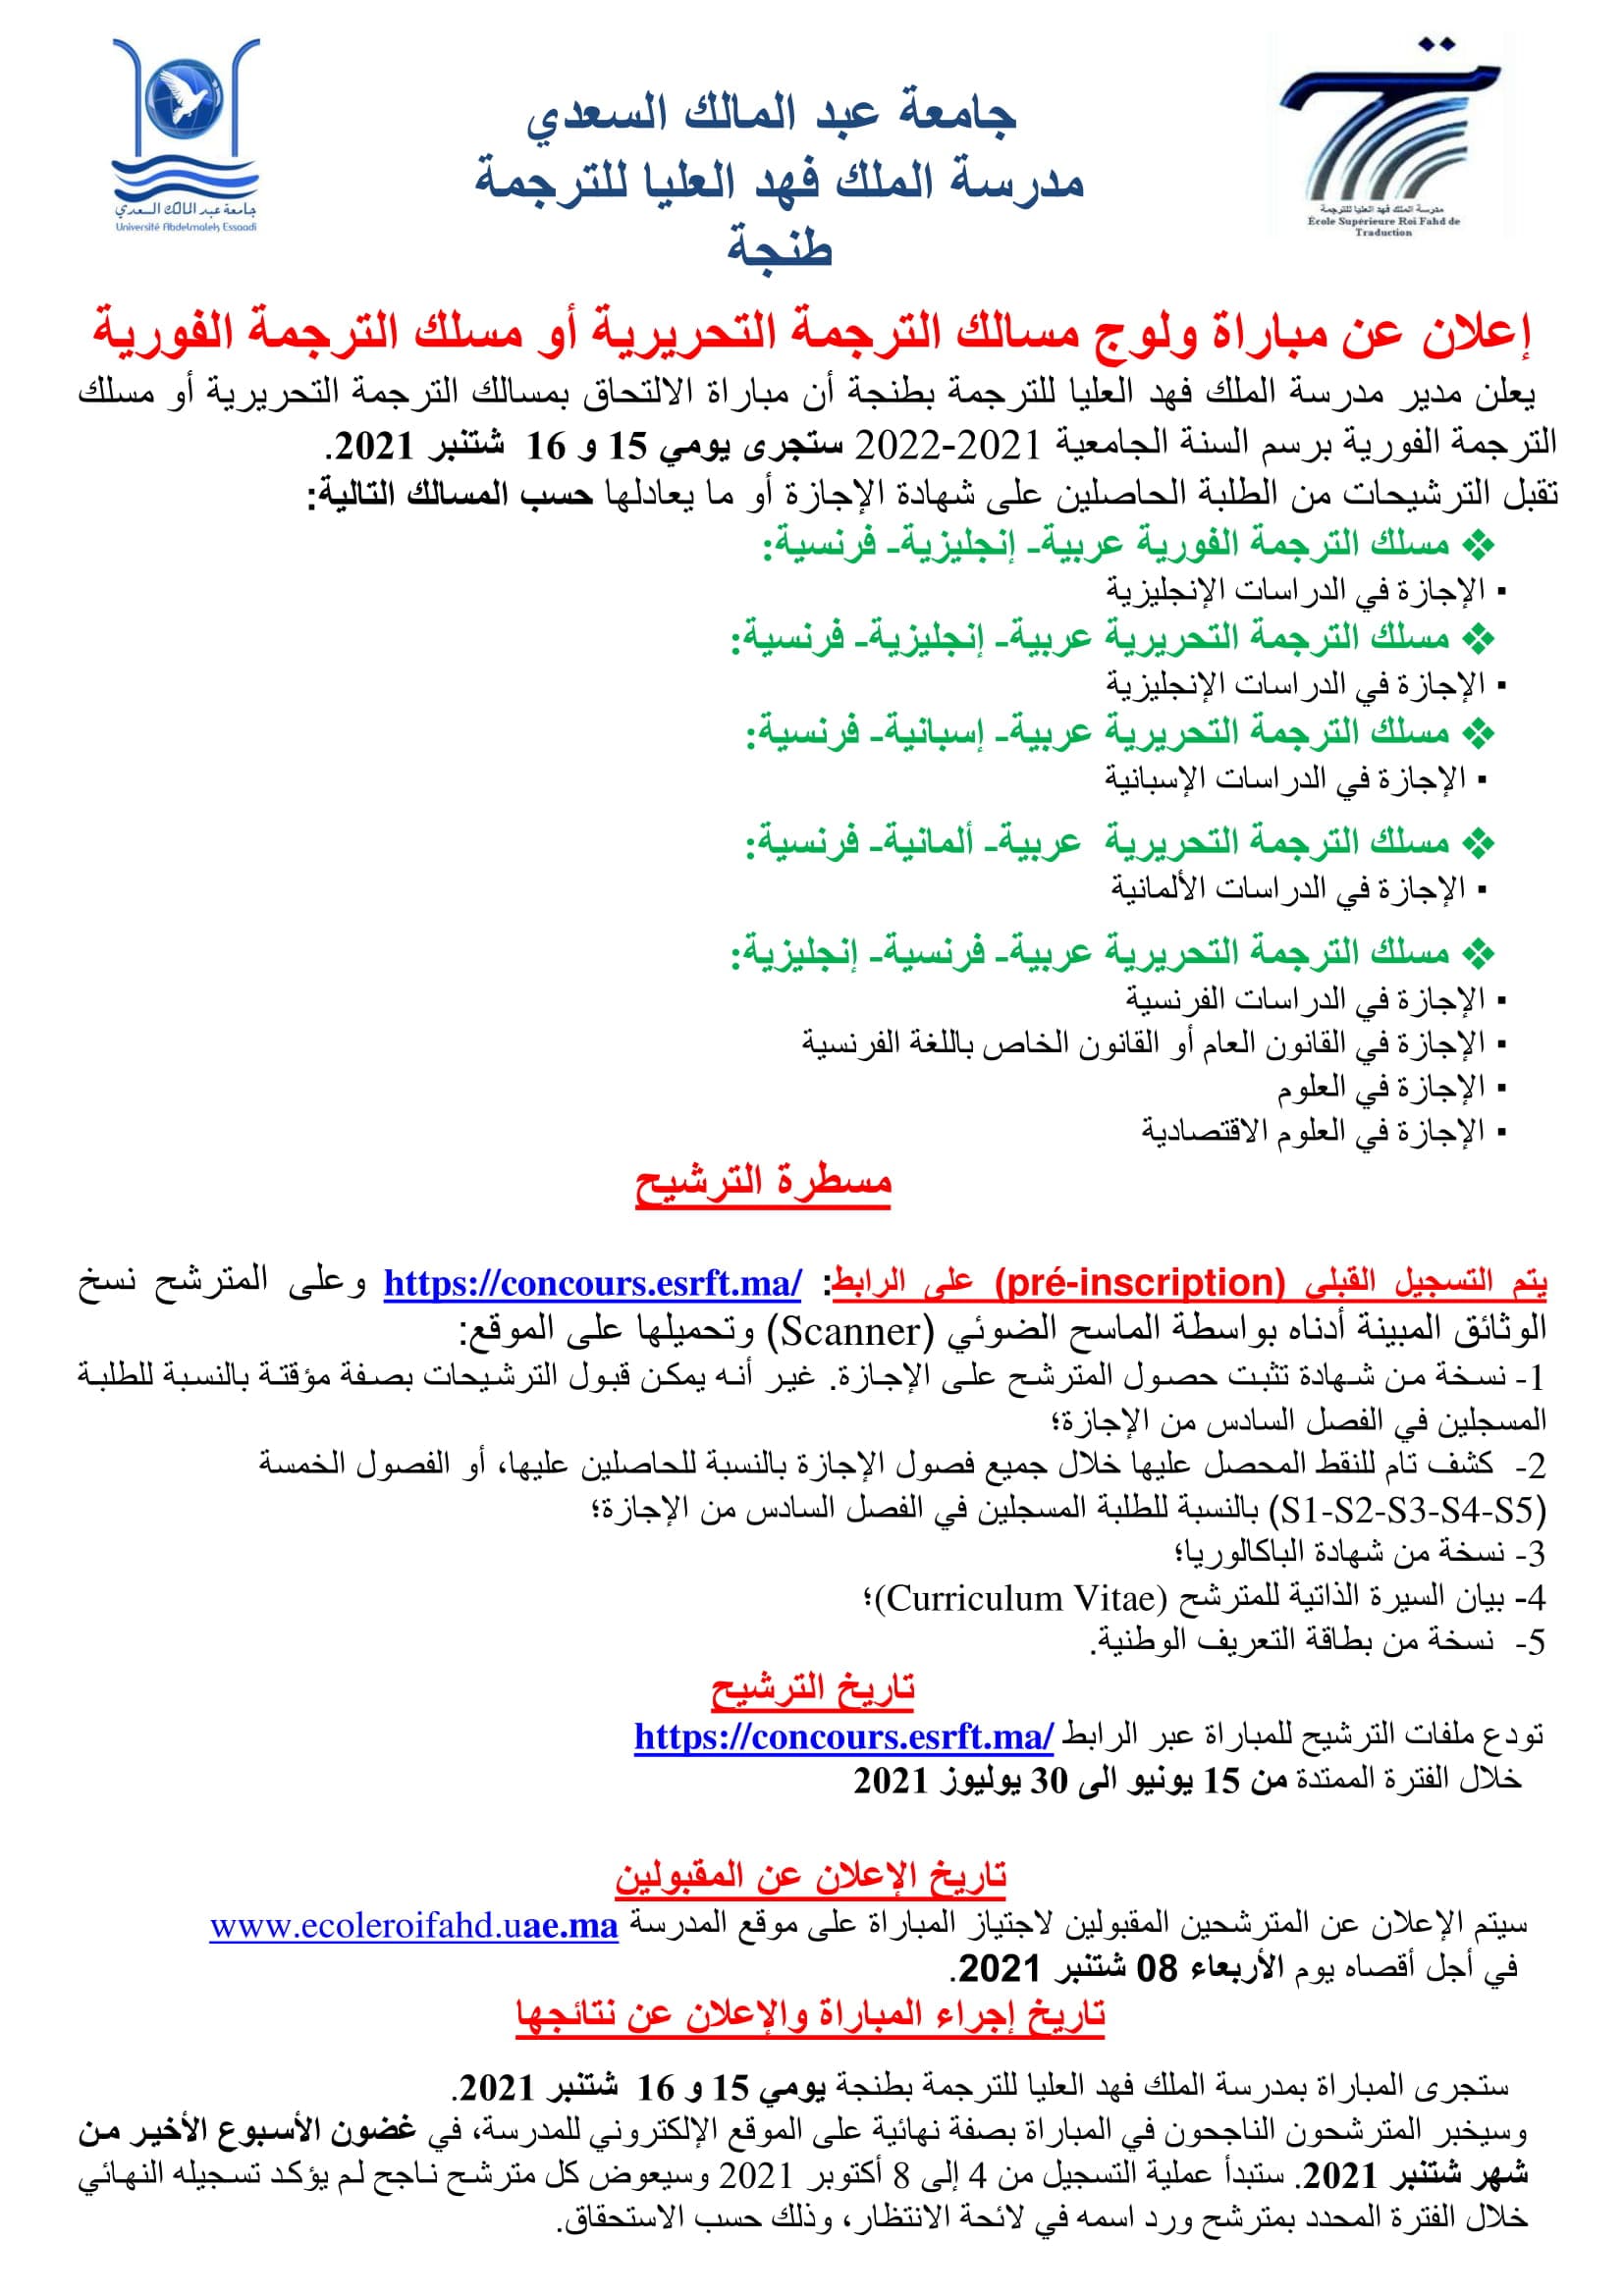 concours.esrft.ma ، التسجيل في مدرسة الملك فهد العليا للترجمة 2022